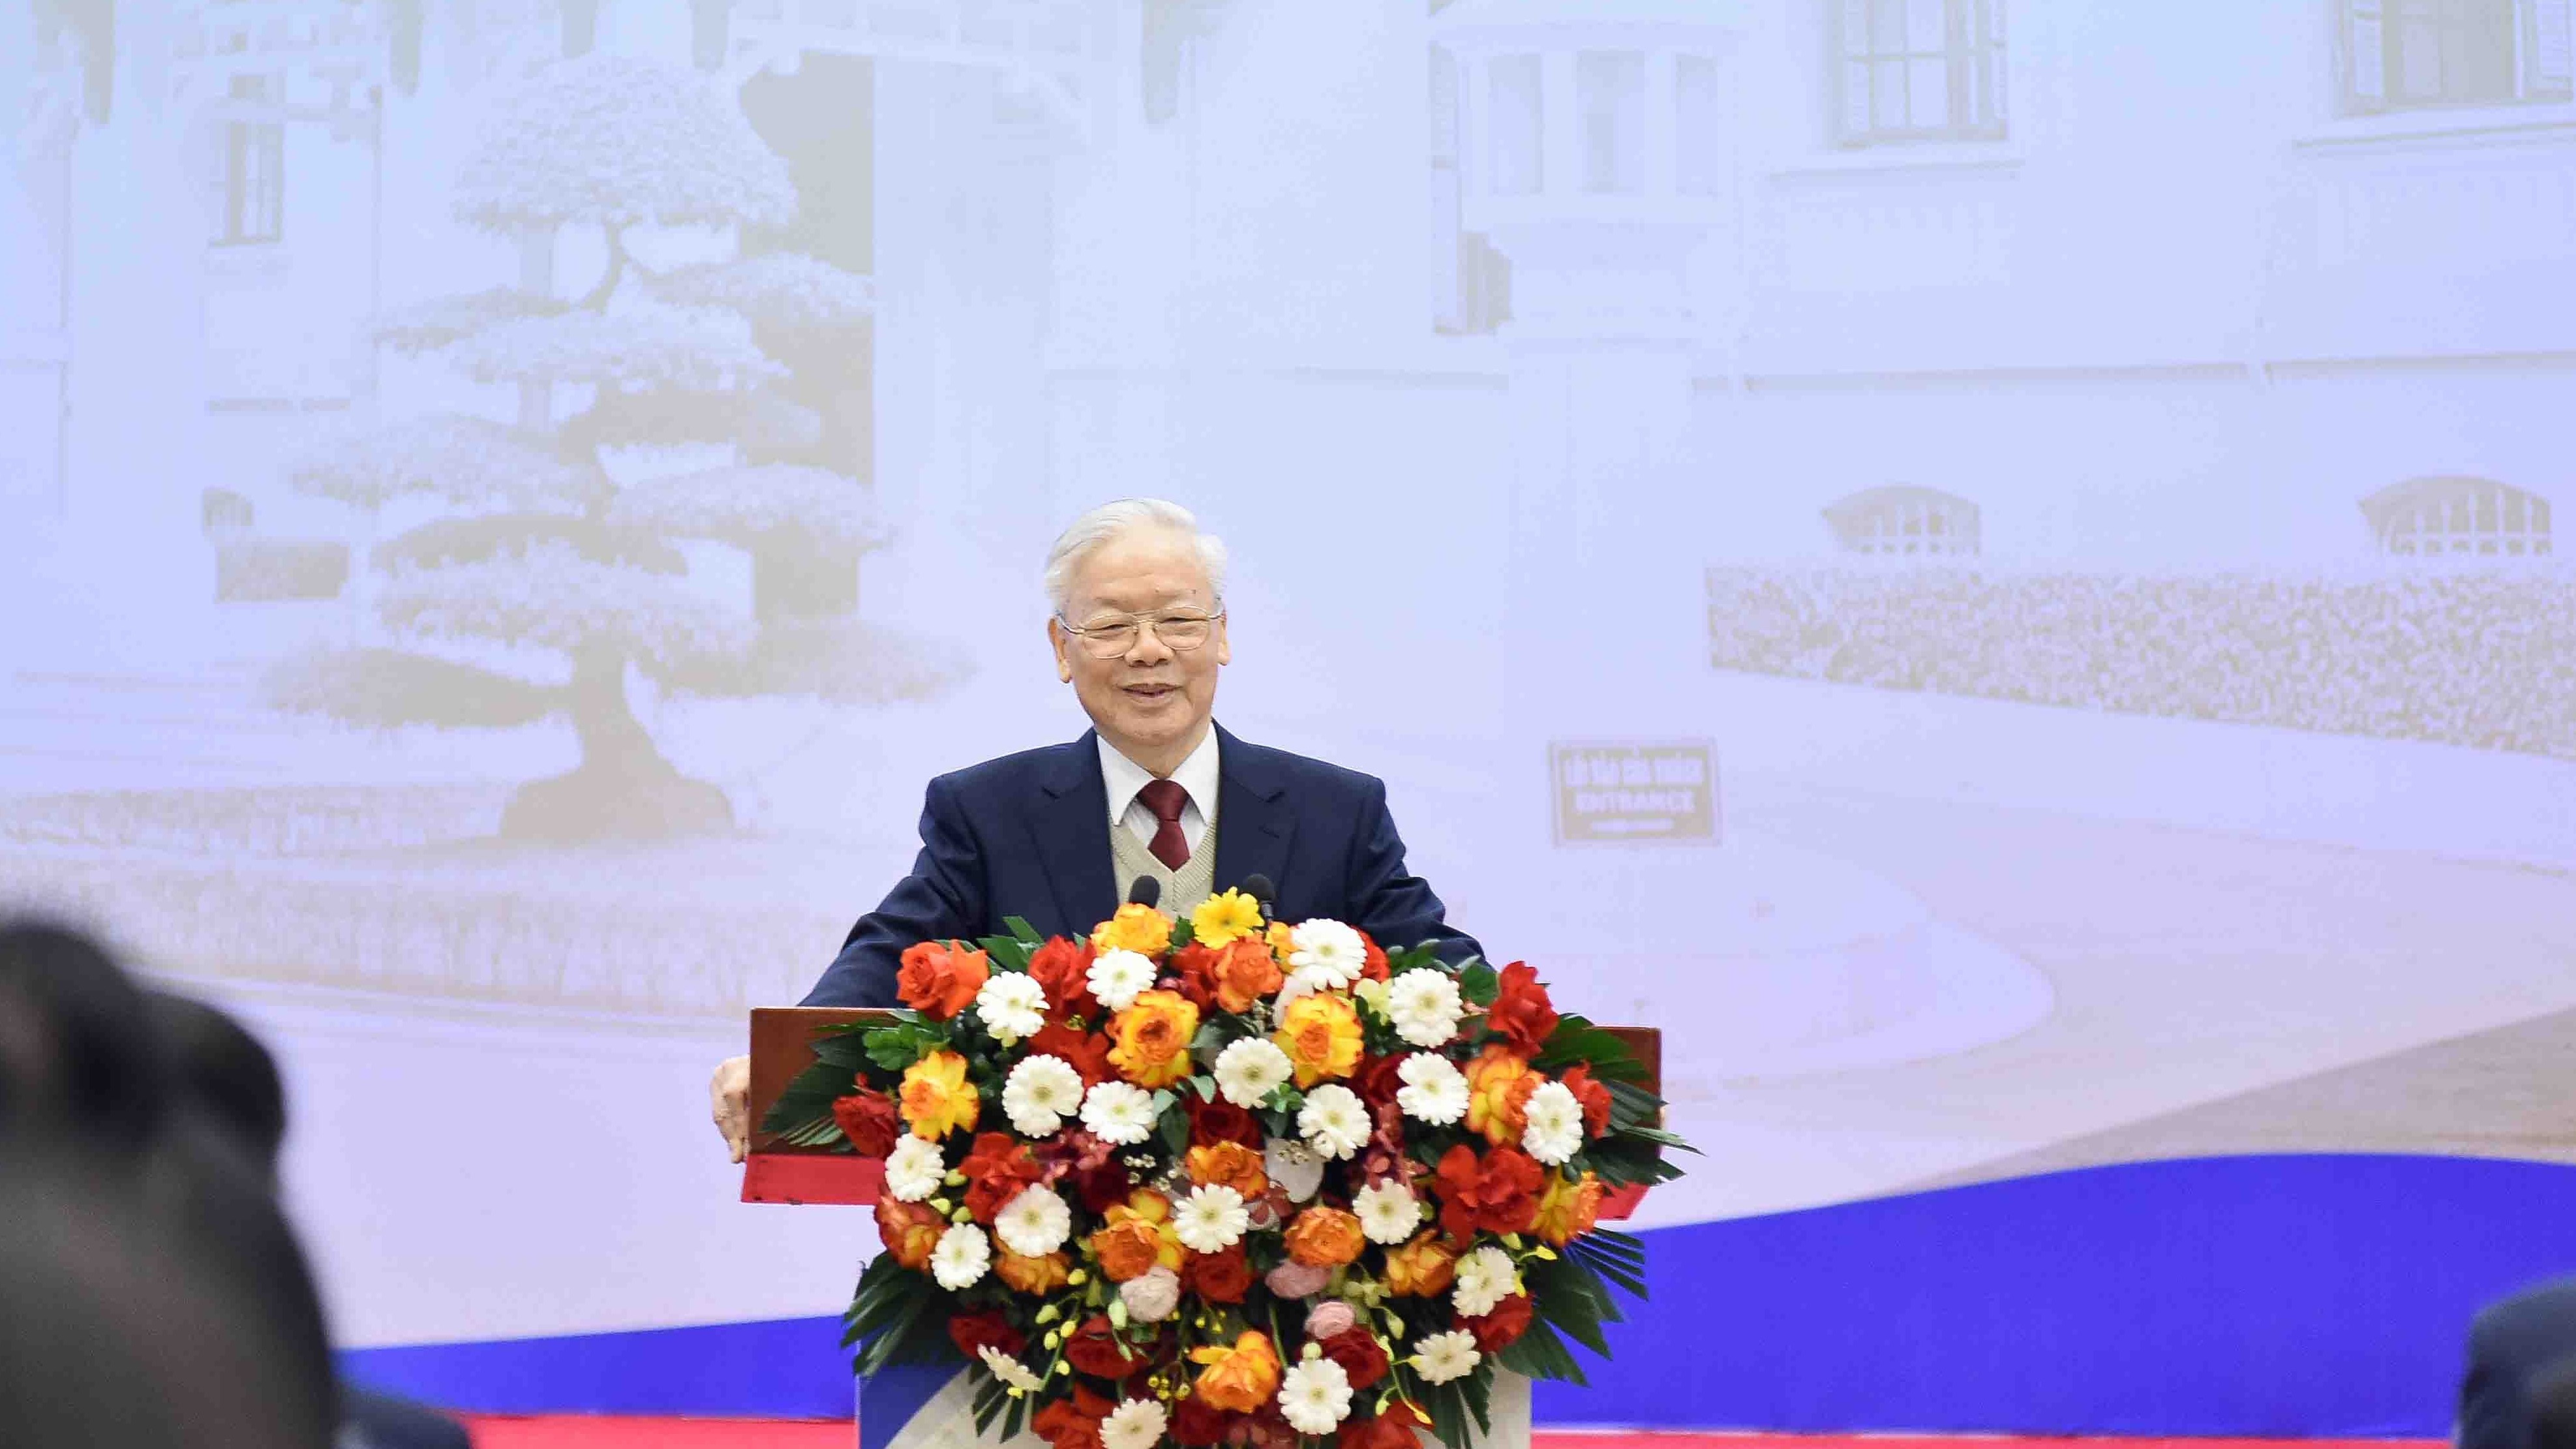 Tổng Bí thư Nguyễn Phú Trọng: Hội nghị Ngoại giao lần thứ 32 là hội nghị rất quan trọng!